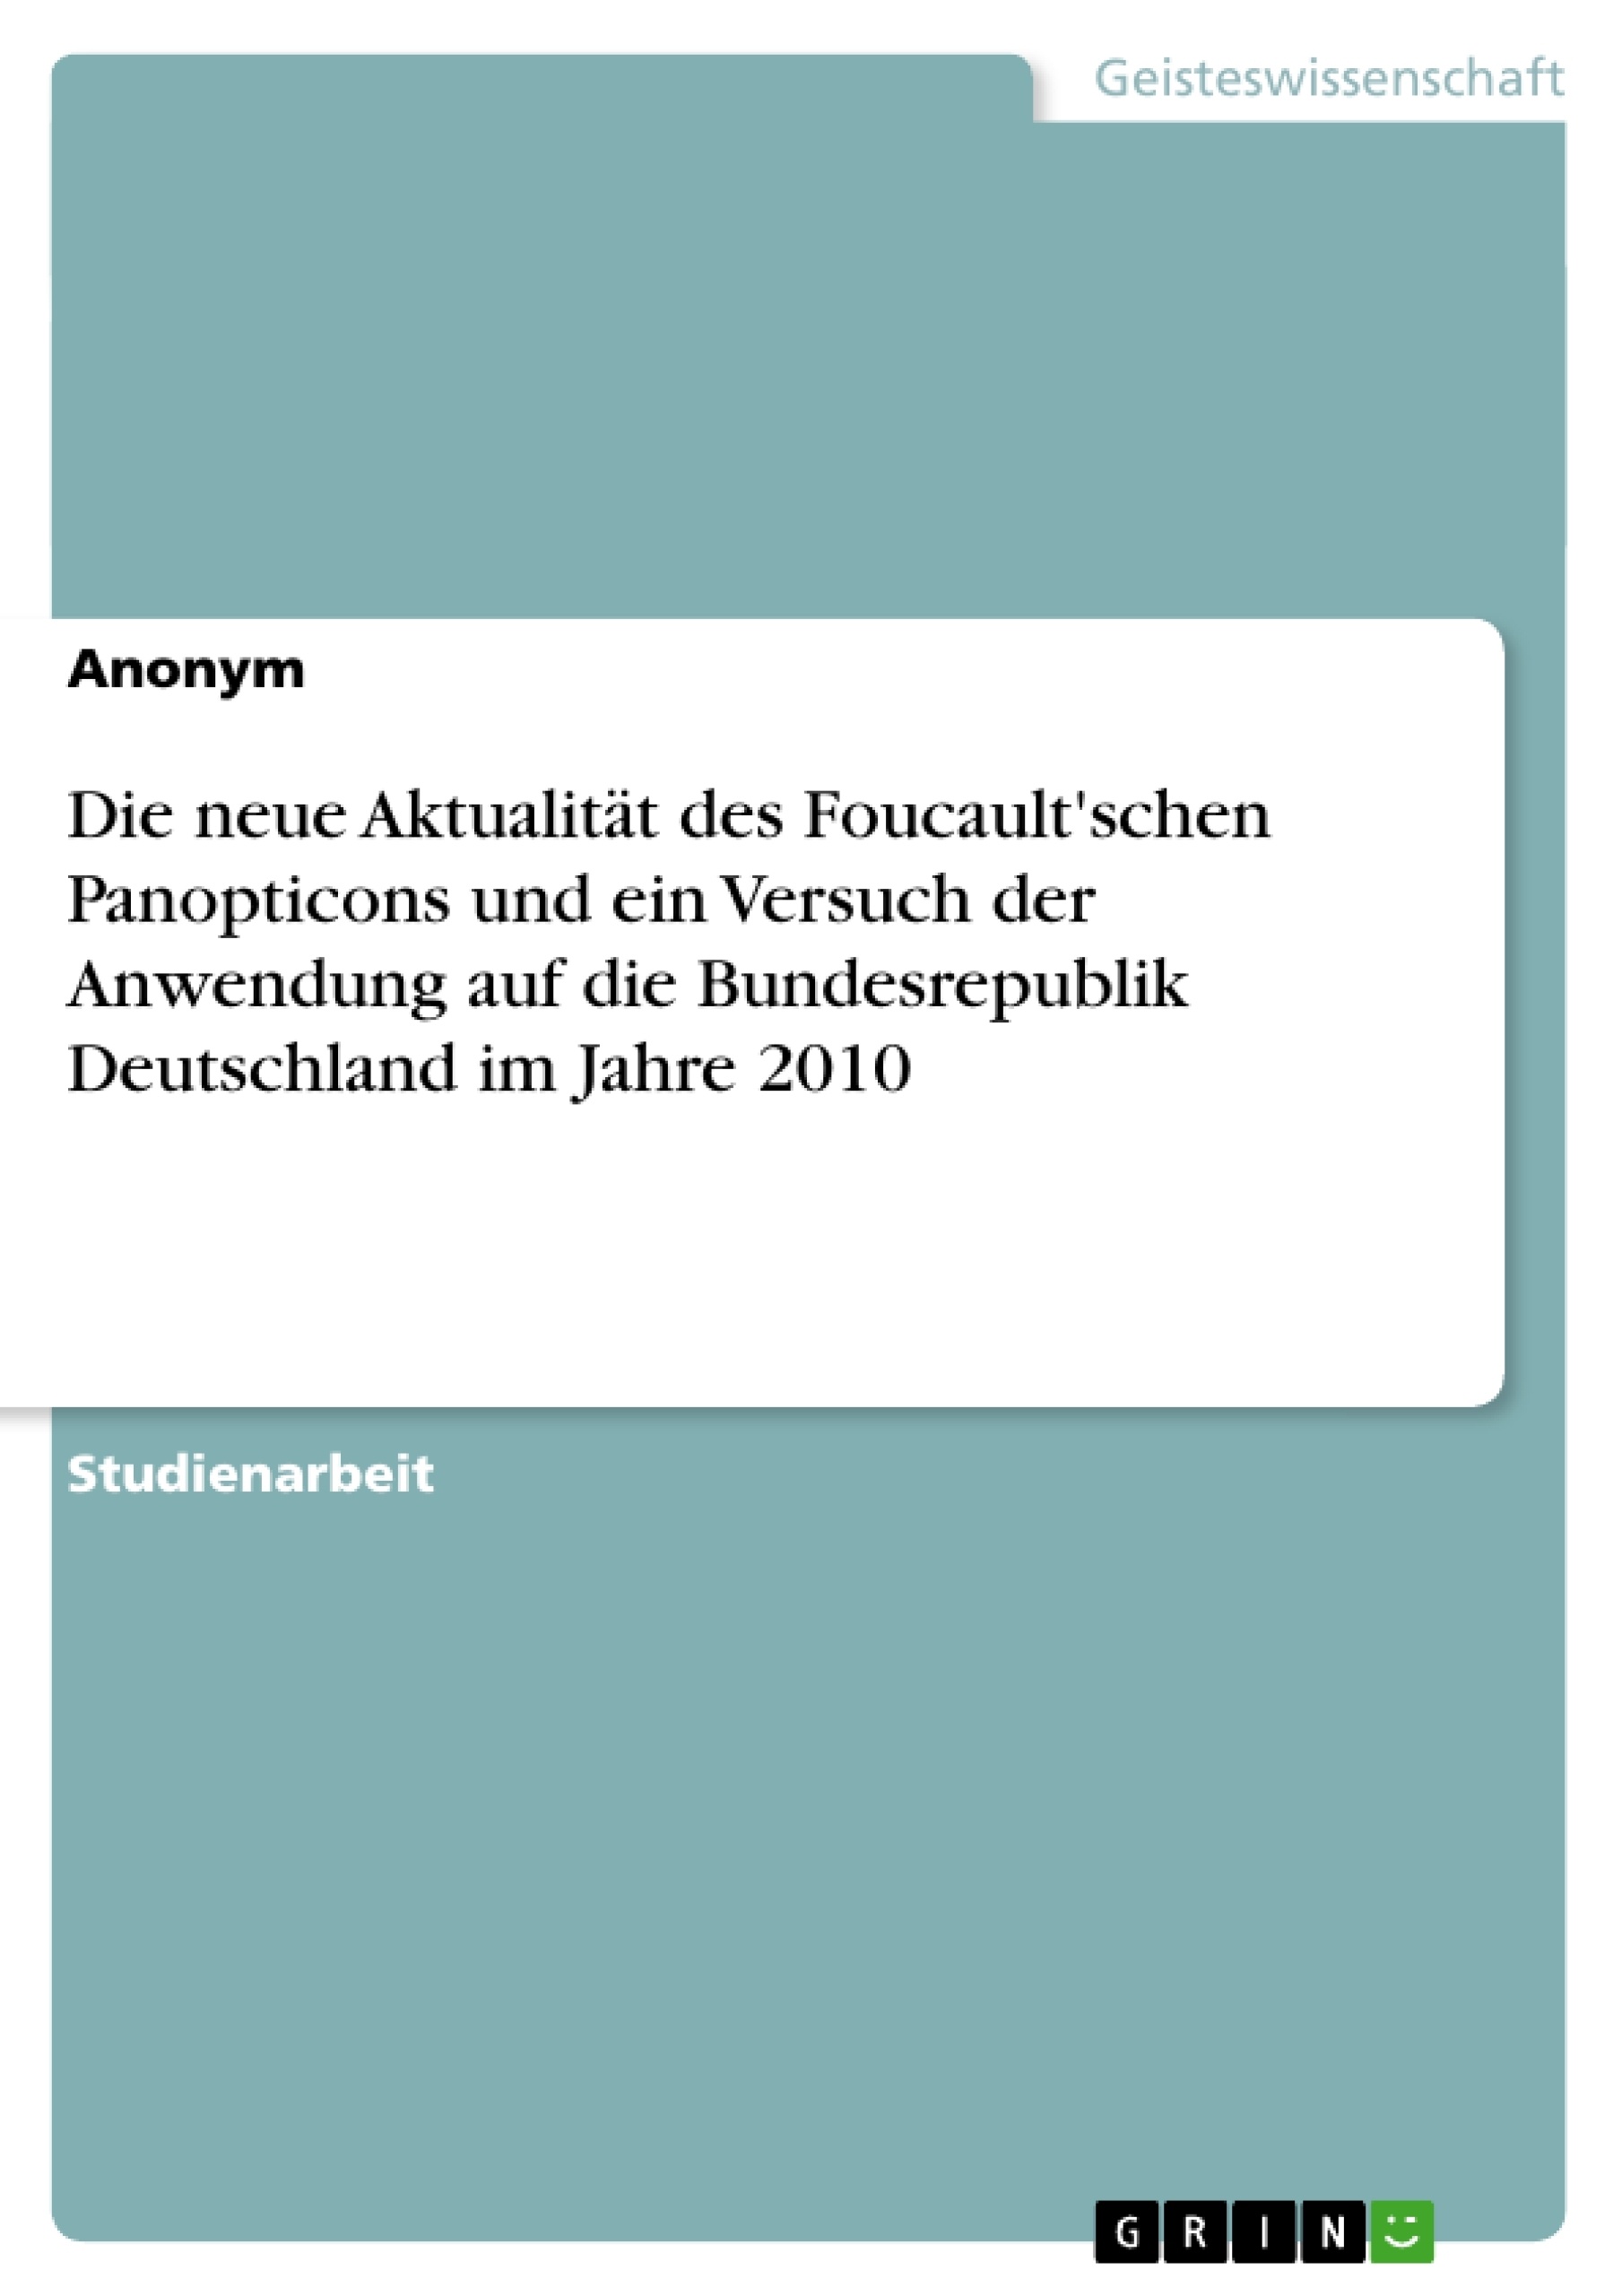 Title: Die neue Aktualität des Foucault'schen Panopticons und ein Versuch der Anwendung auf die Bundesrepublik Deutschland im Jahre 2010